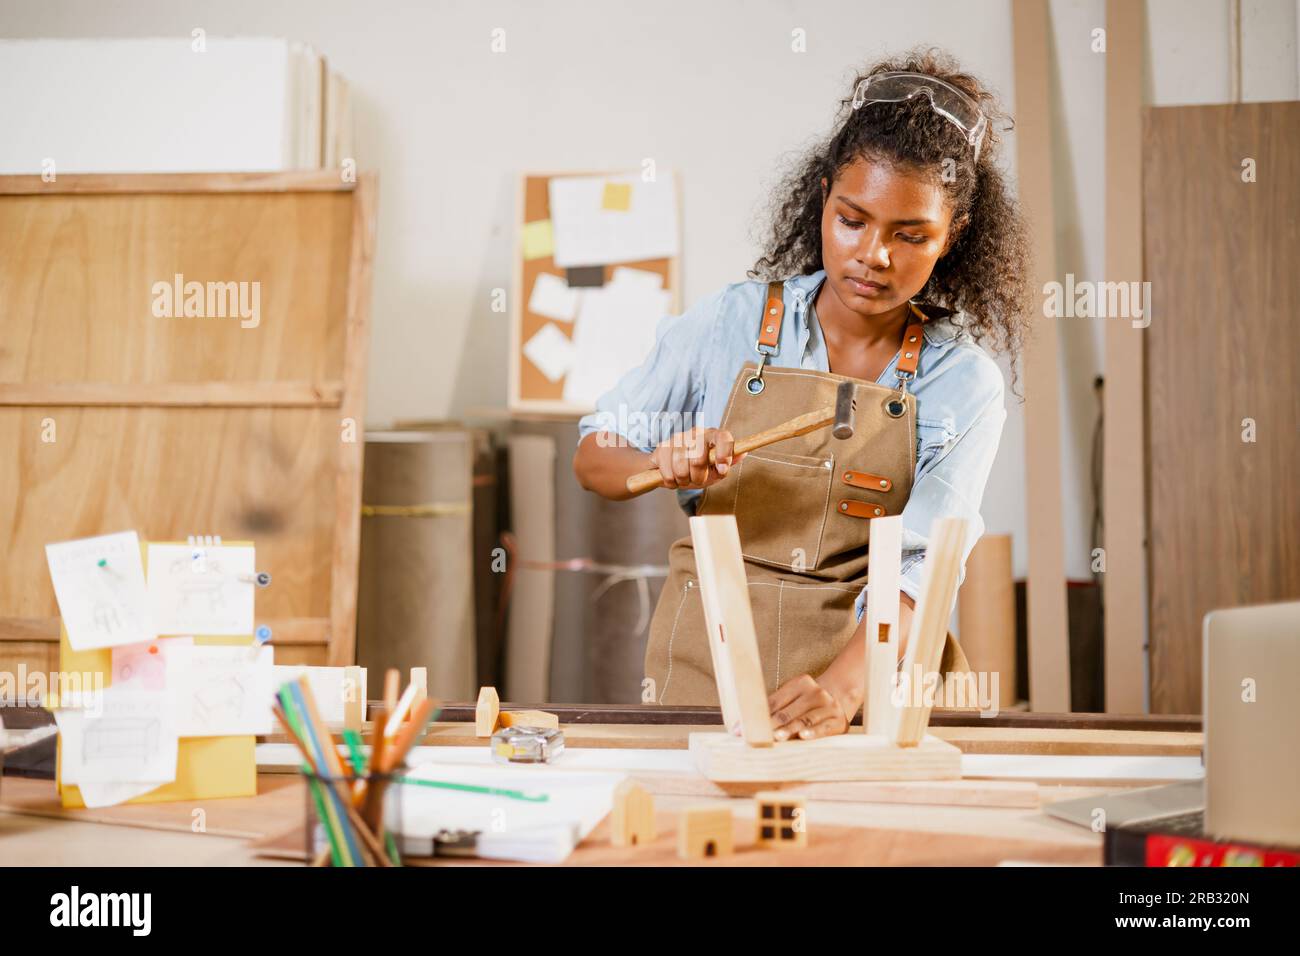 Femme noire africaine menuisier menuisier travaillant construire des meubles en bois de fabrication artisanale de chaise dans l'atelier de studio en bois. Banque D'Images